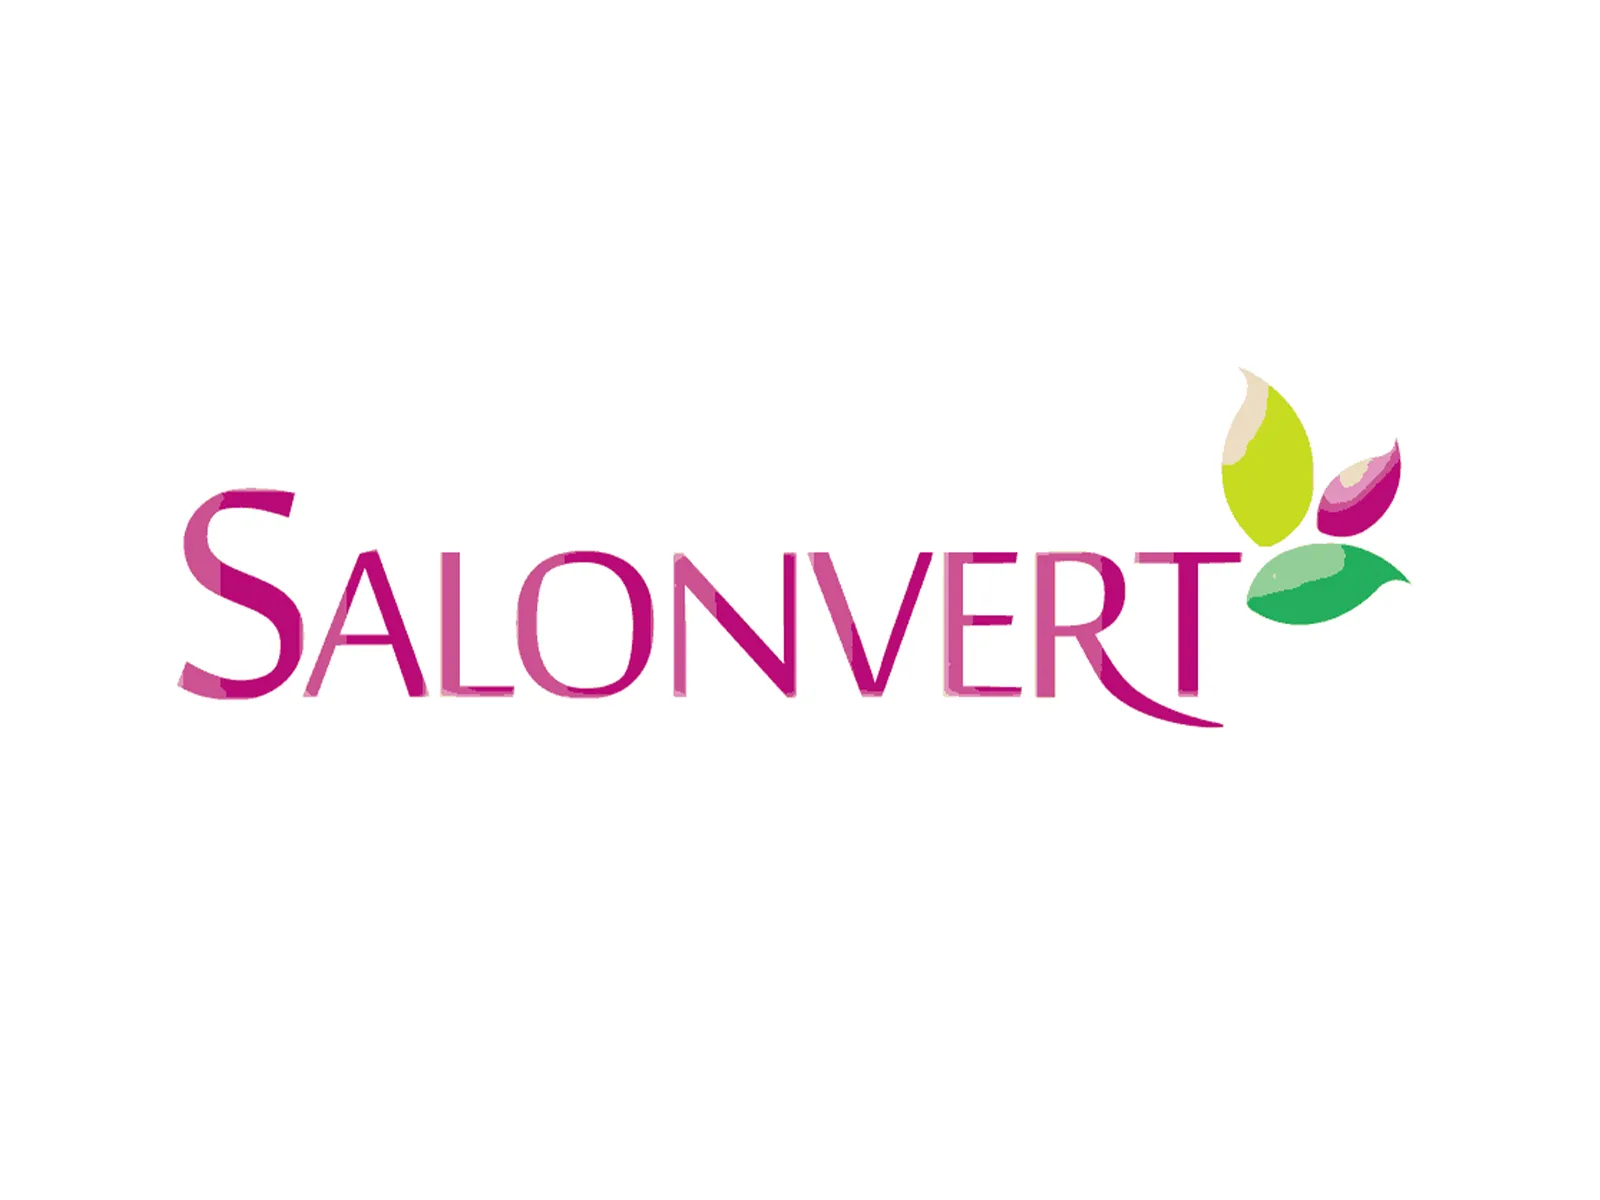 Salonvert-1600x1200